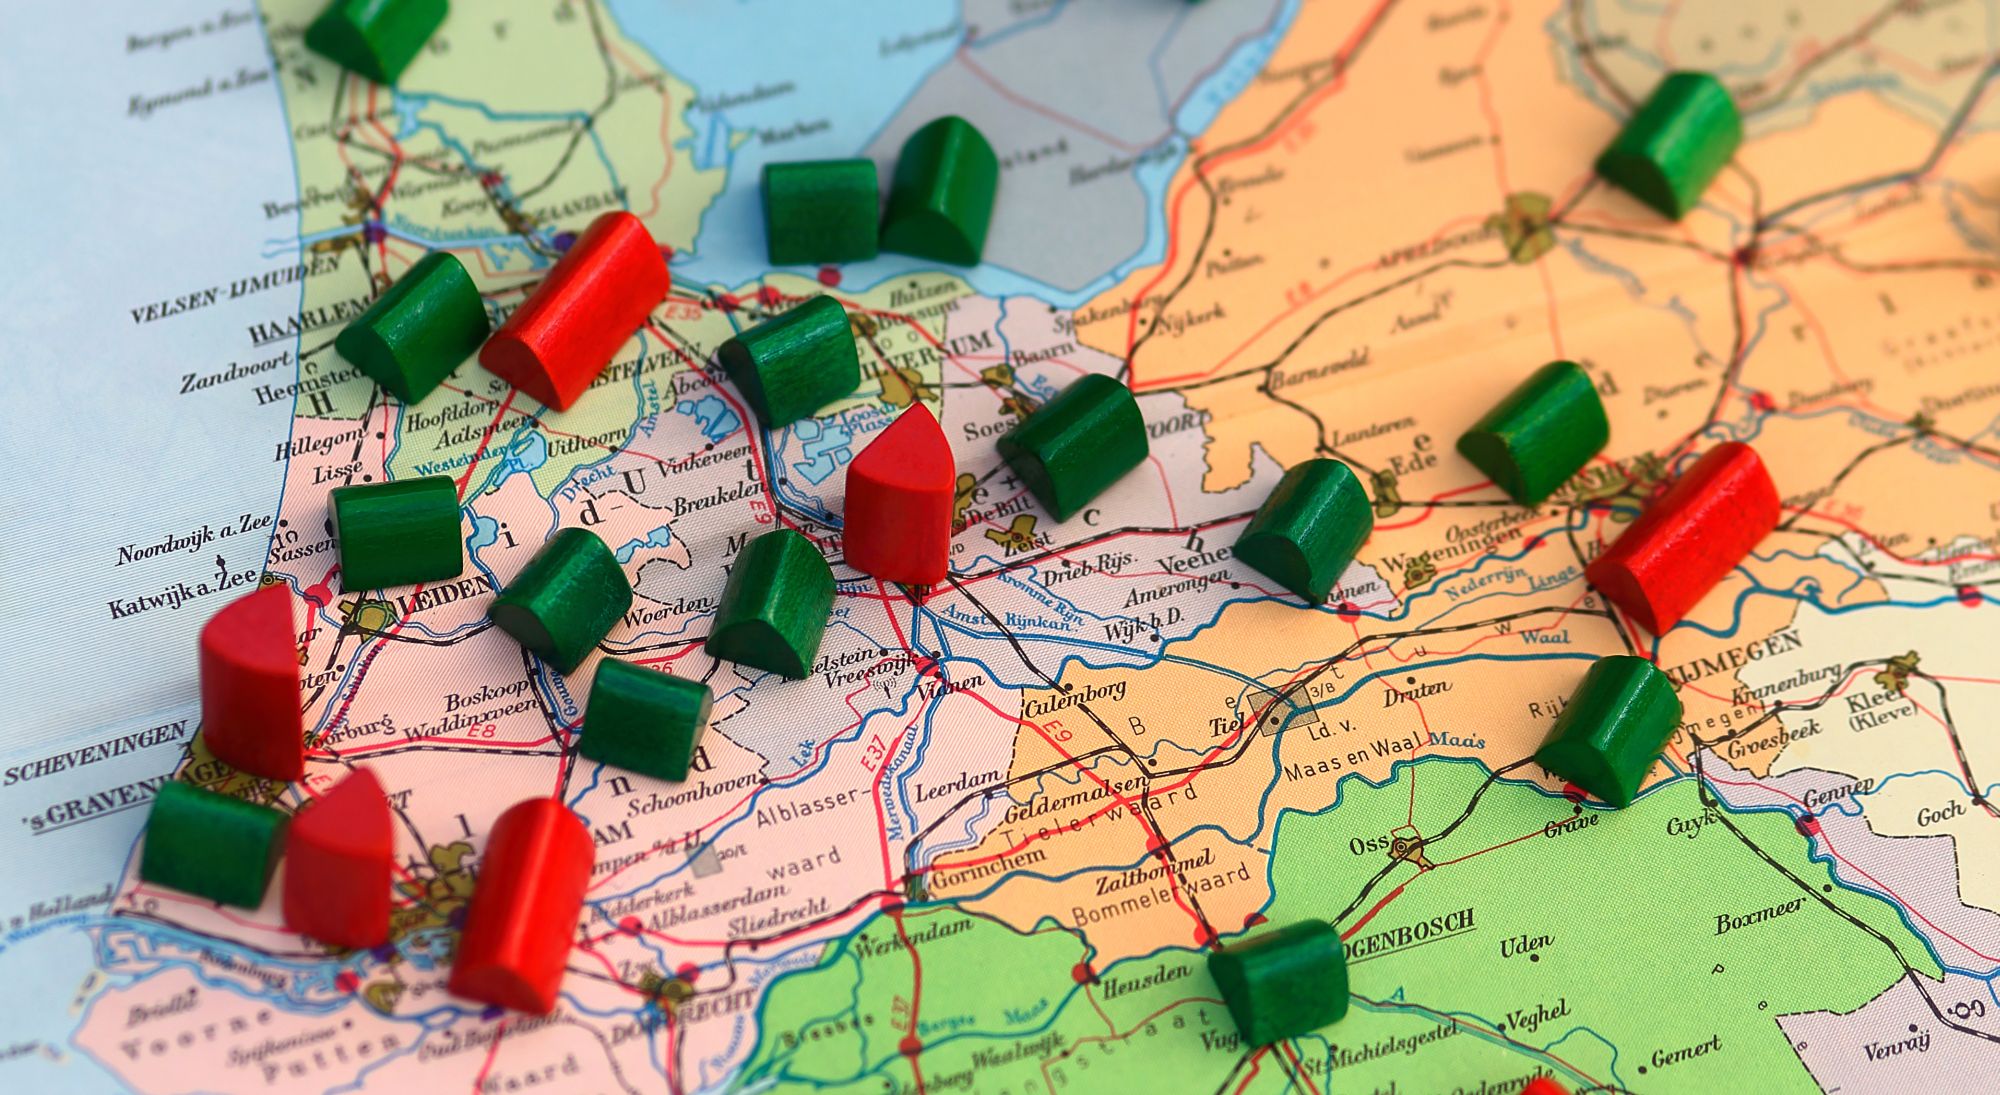 Rode en groene speelgoedhuisjes verspreid over de kaart van Nederland